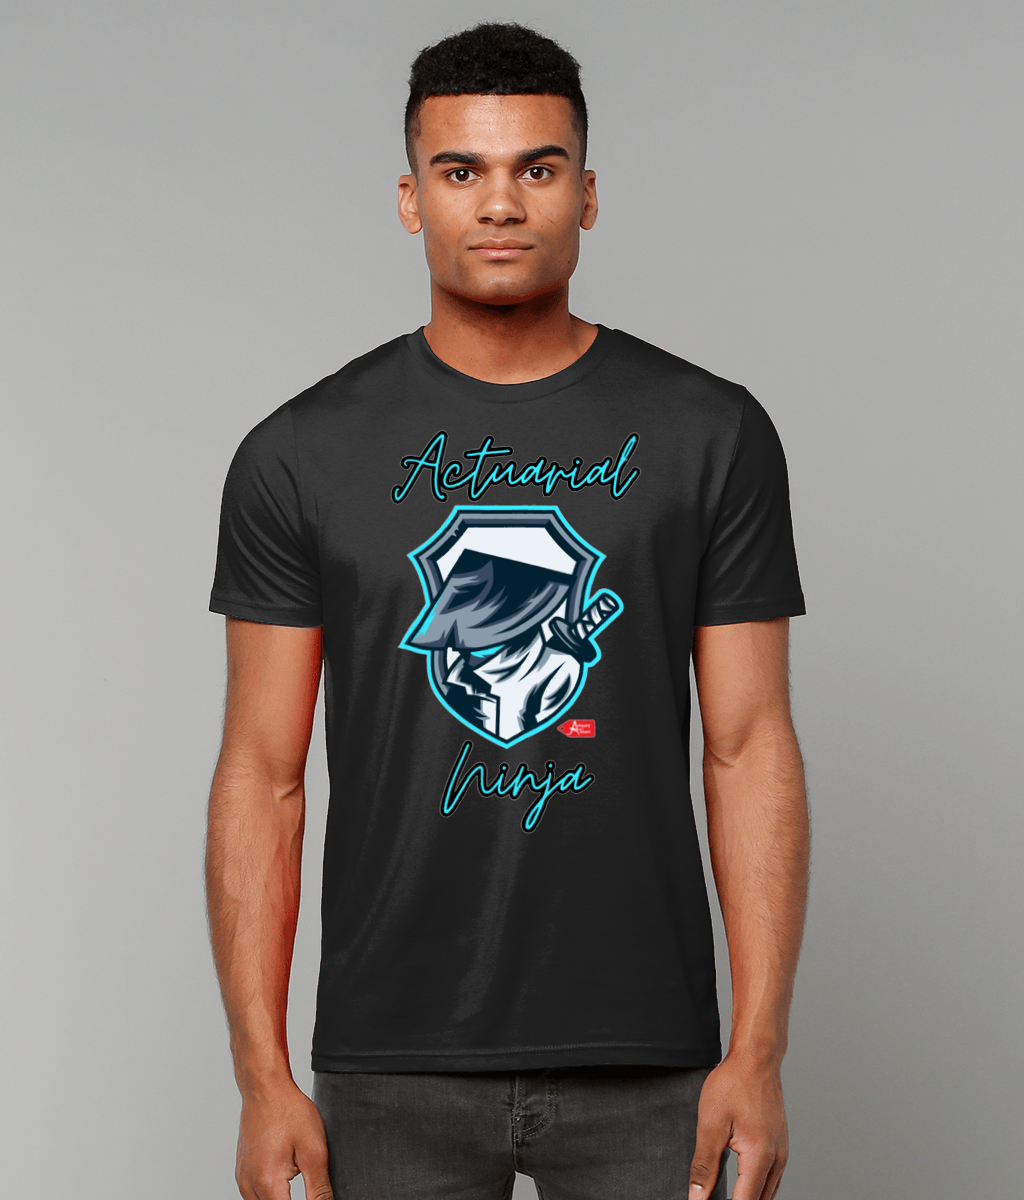 Actuarial Ninja T-Shirt